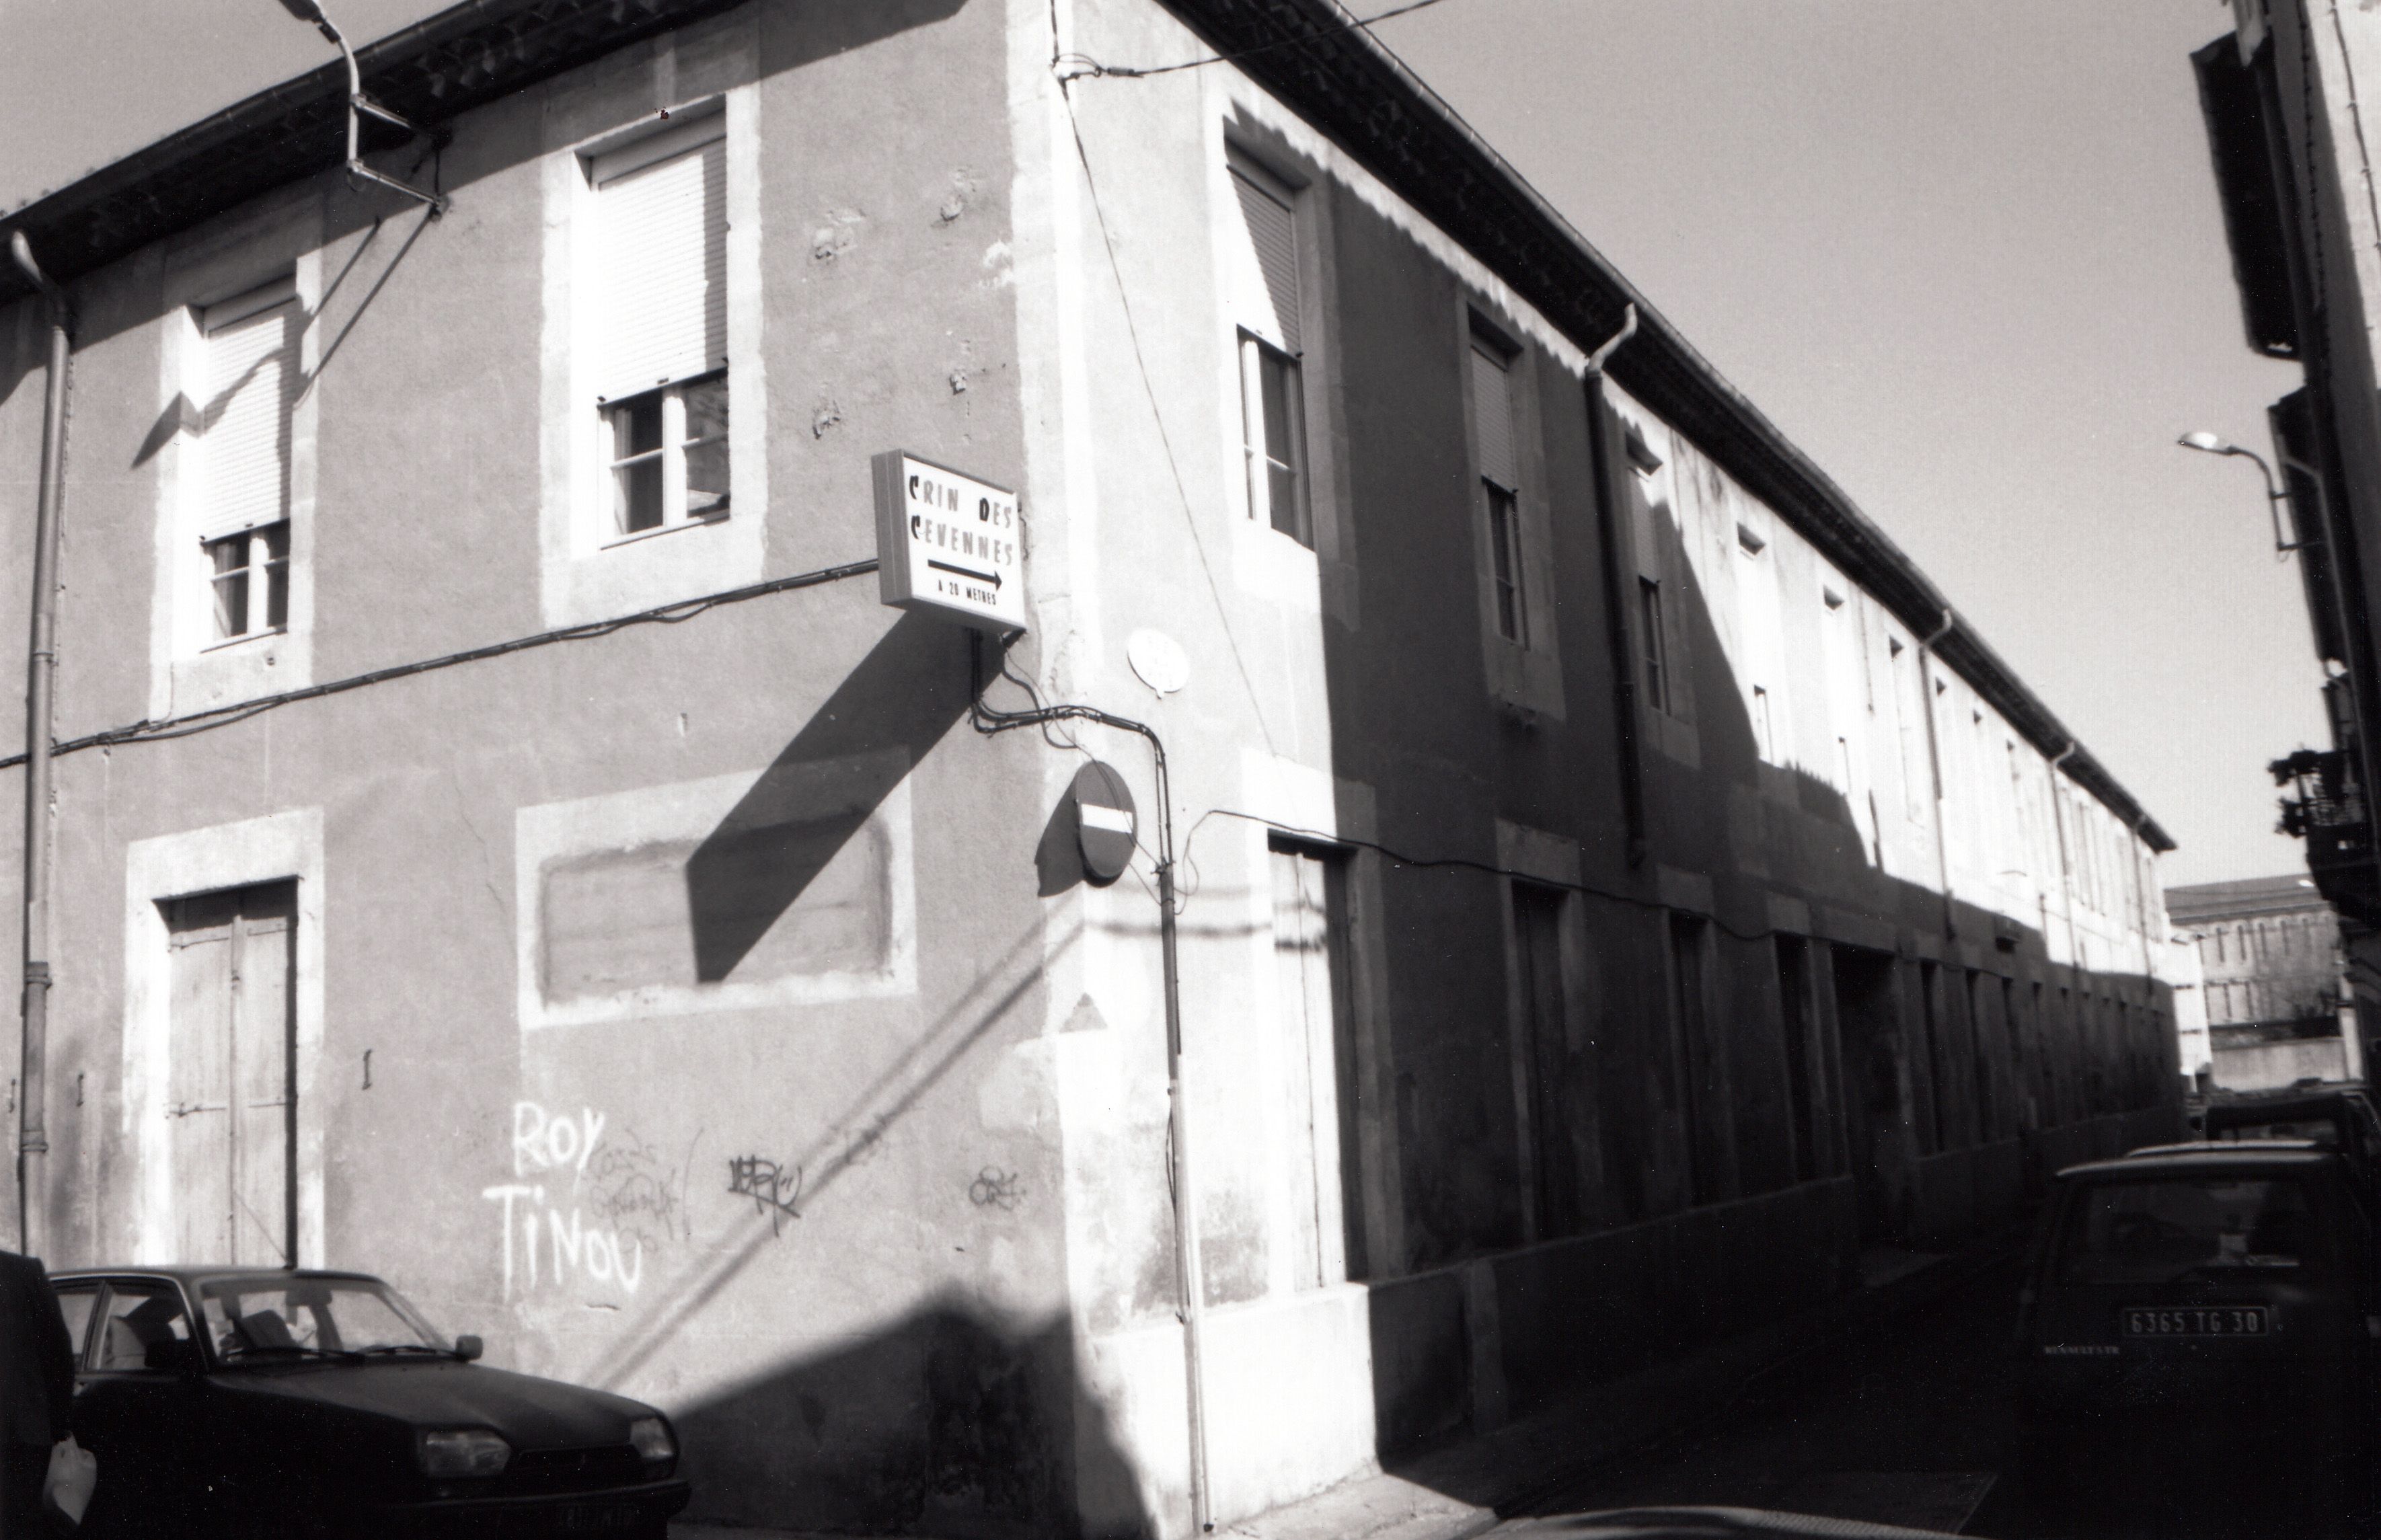 moulinerie de soie, usine de passementerie Guérin et Pallier